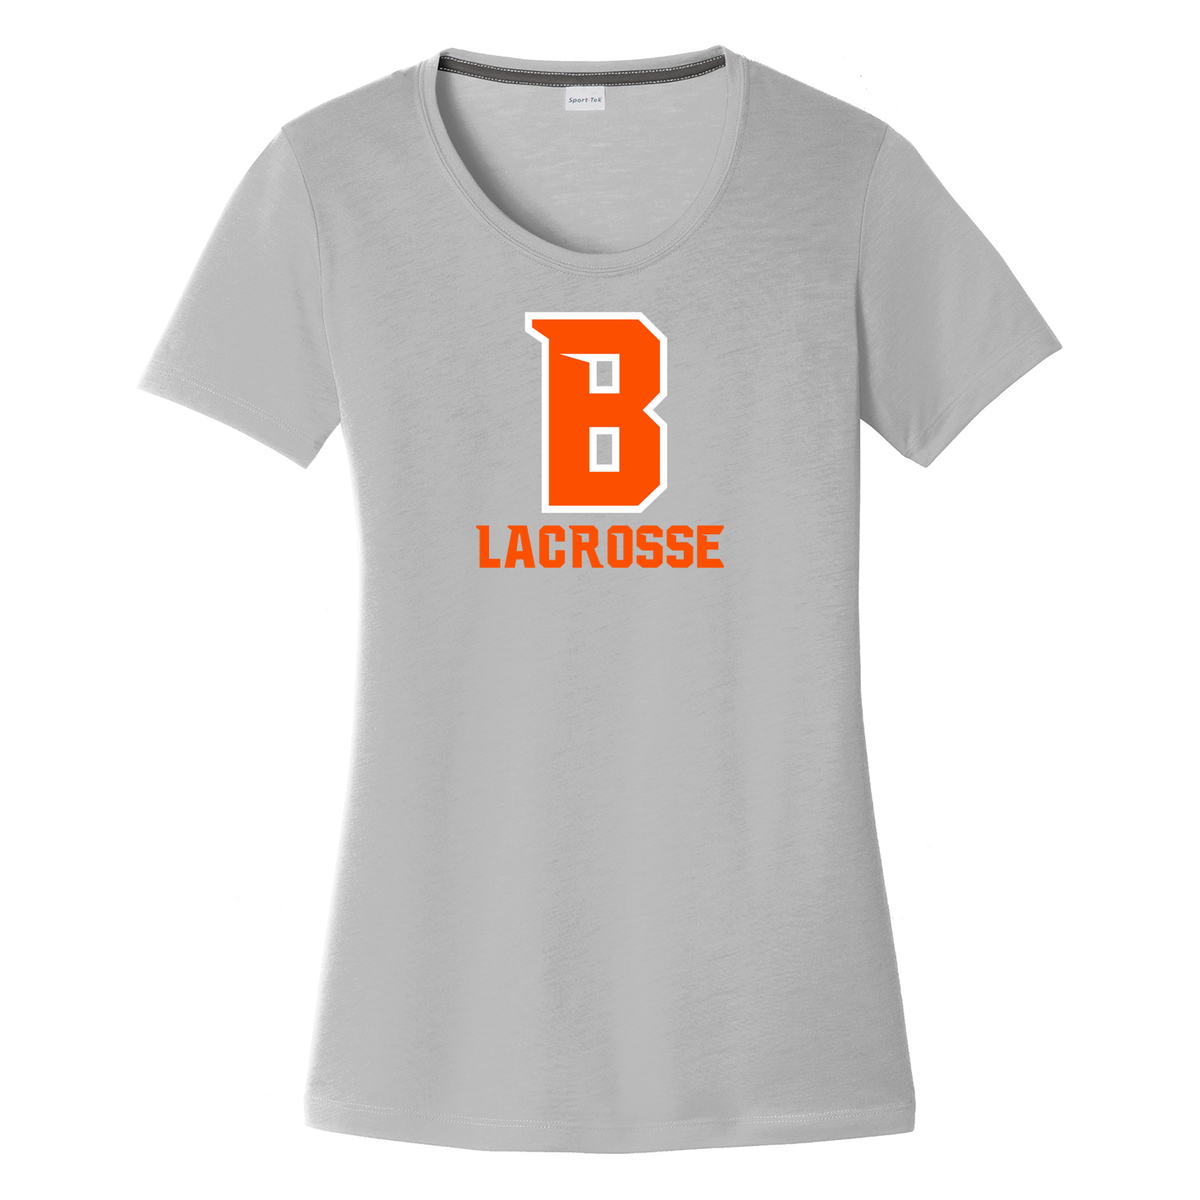 Babylon Lacrosse Women's CottonTouch Performance T-Shirt